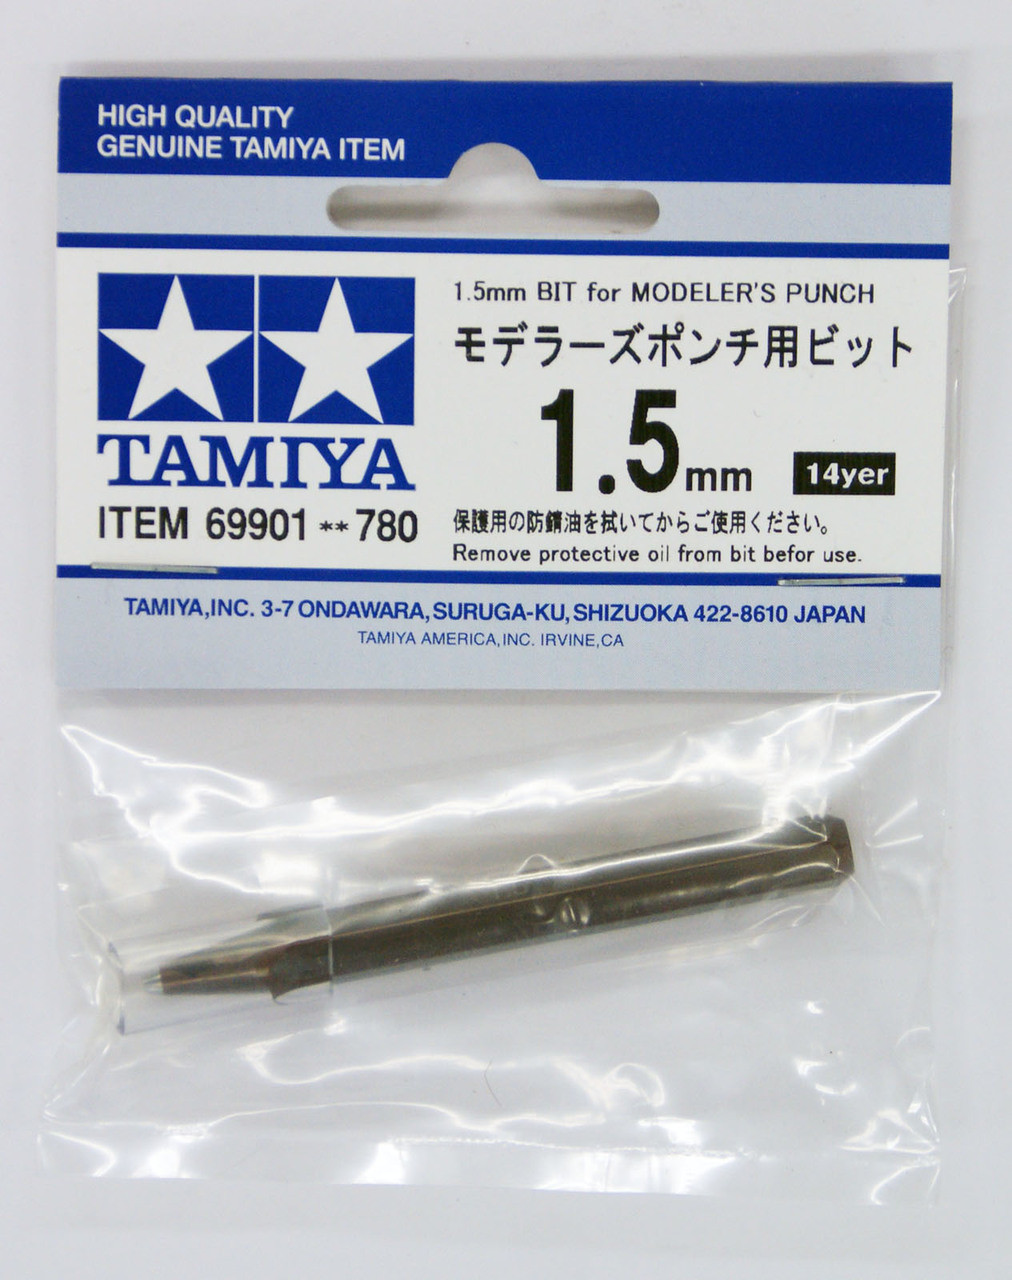 Tamiya 74132 Fine Pivot Drill Bit 0.8mm Shank Diameter 1.5mm